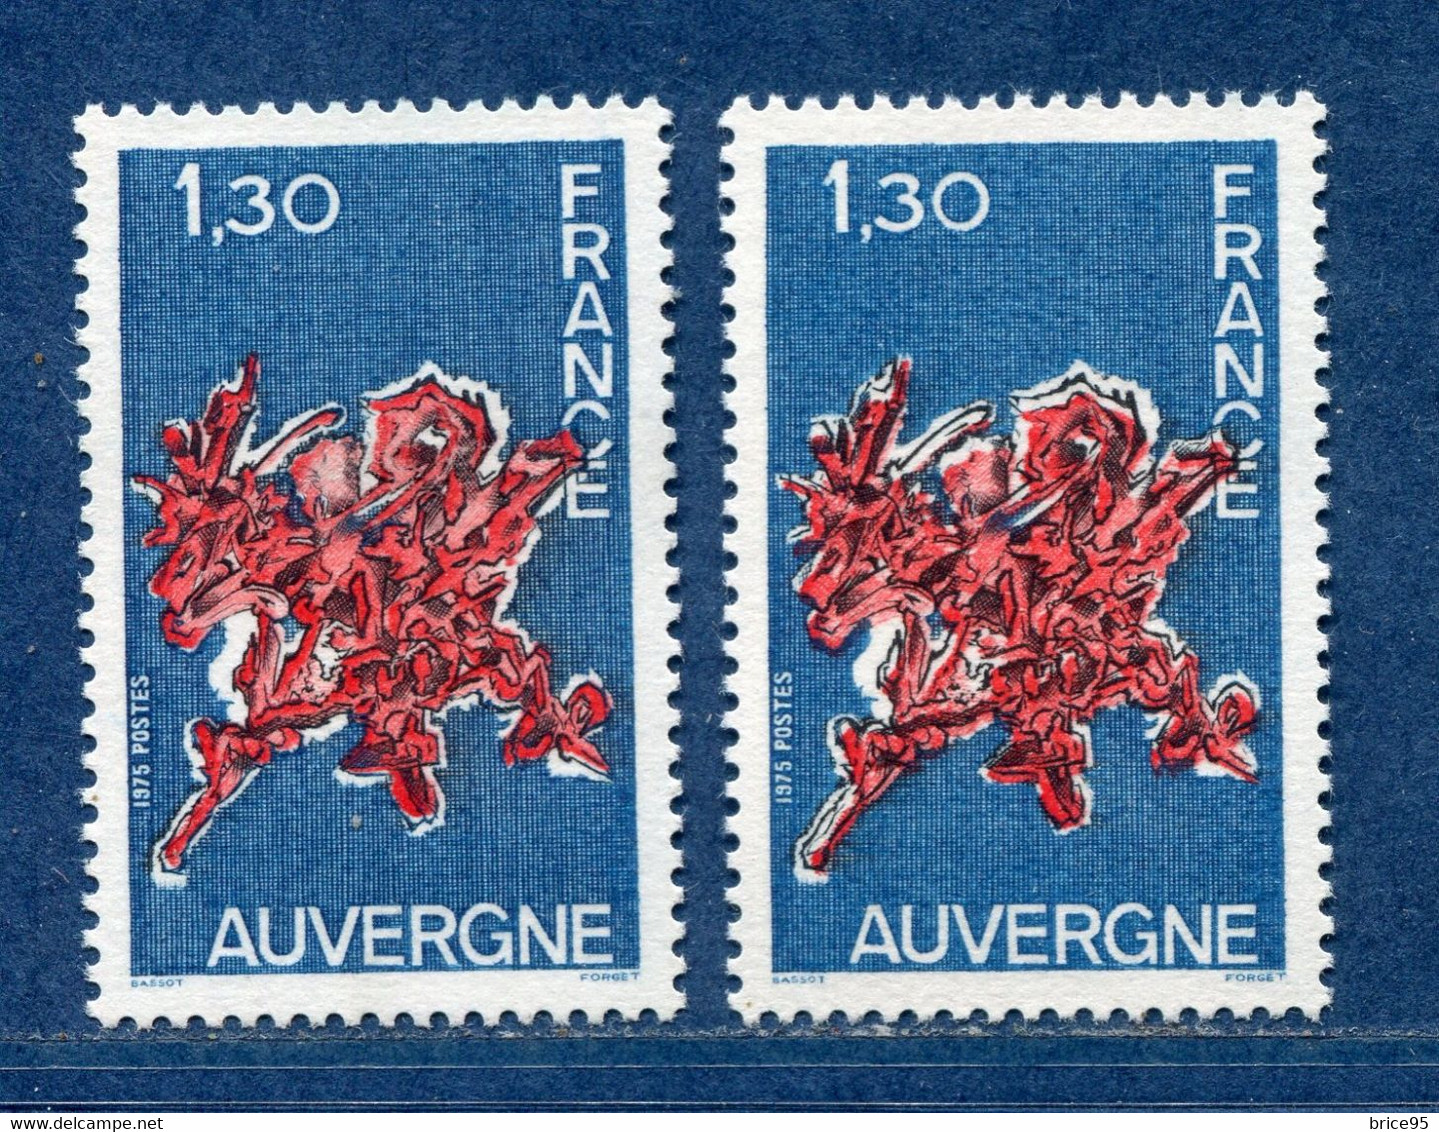 ⭐ France - Variété - YT N° 1850 - Couleurs - Pétouille - Neuf Sans Charnière - 1975 ⭐ - Ongebruikt